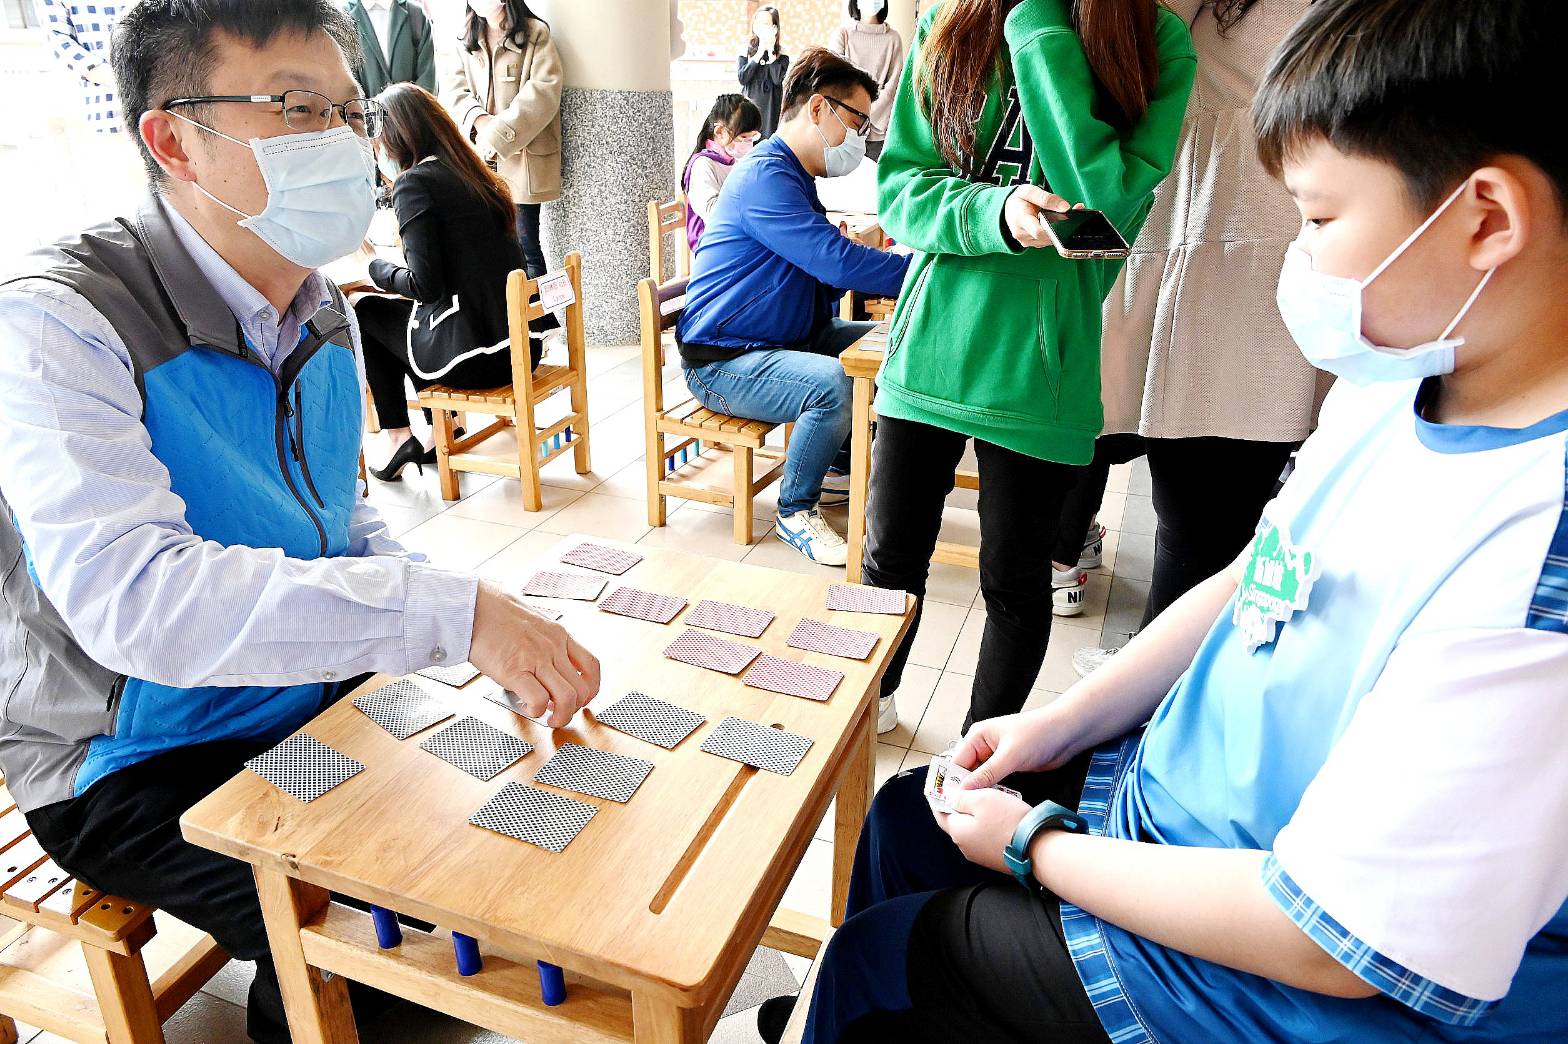 สโมสรโรตารีบริจาคเงินทุนเพื่อการศึกษาภาษาจีนสำหรับเด็กที่กลับมาเรียนที่ไต้หวัน (ภาพจาก สำนักการศึกษานครนิวไทเป)